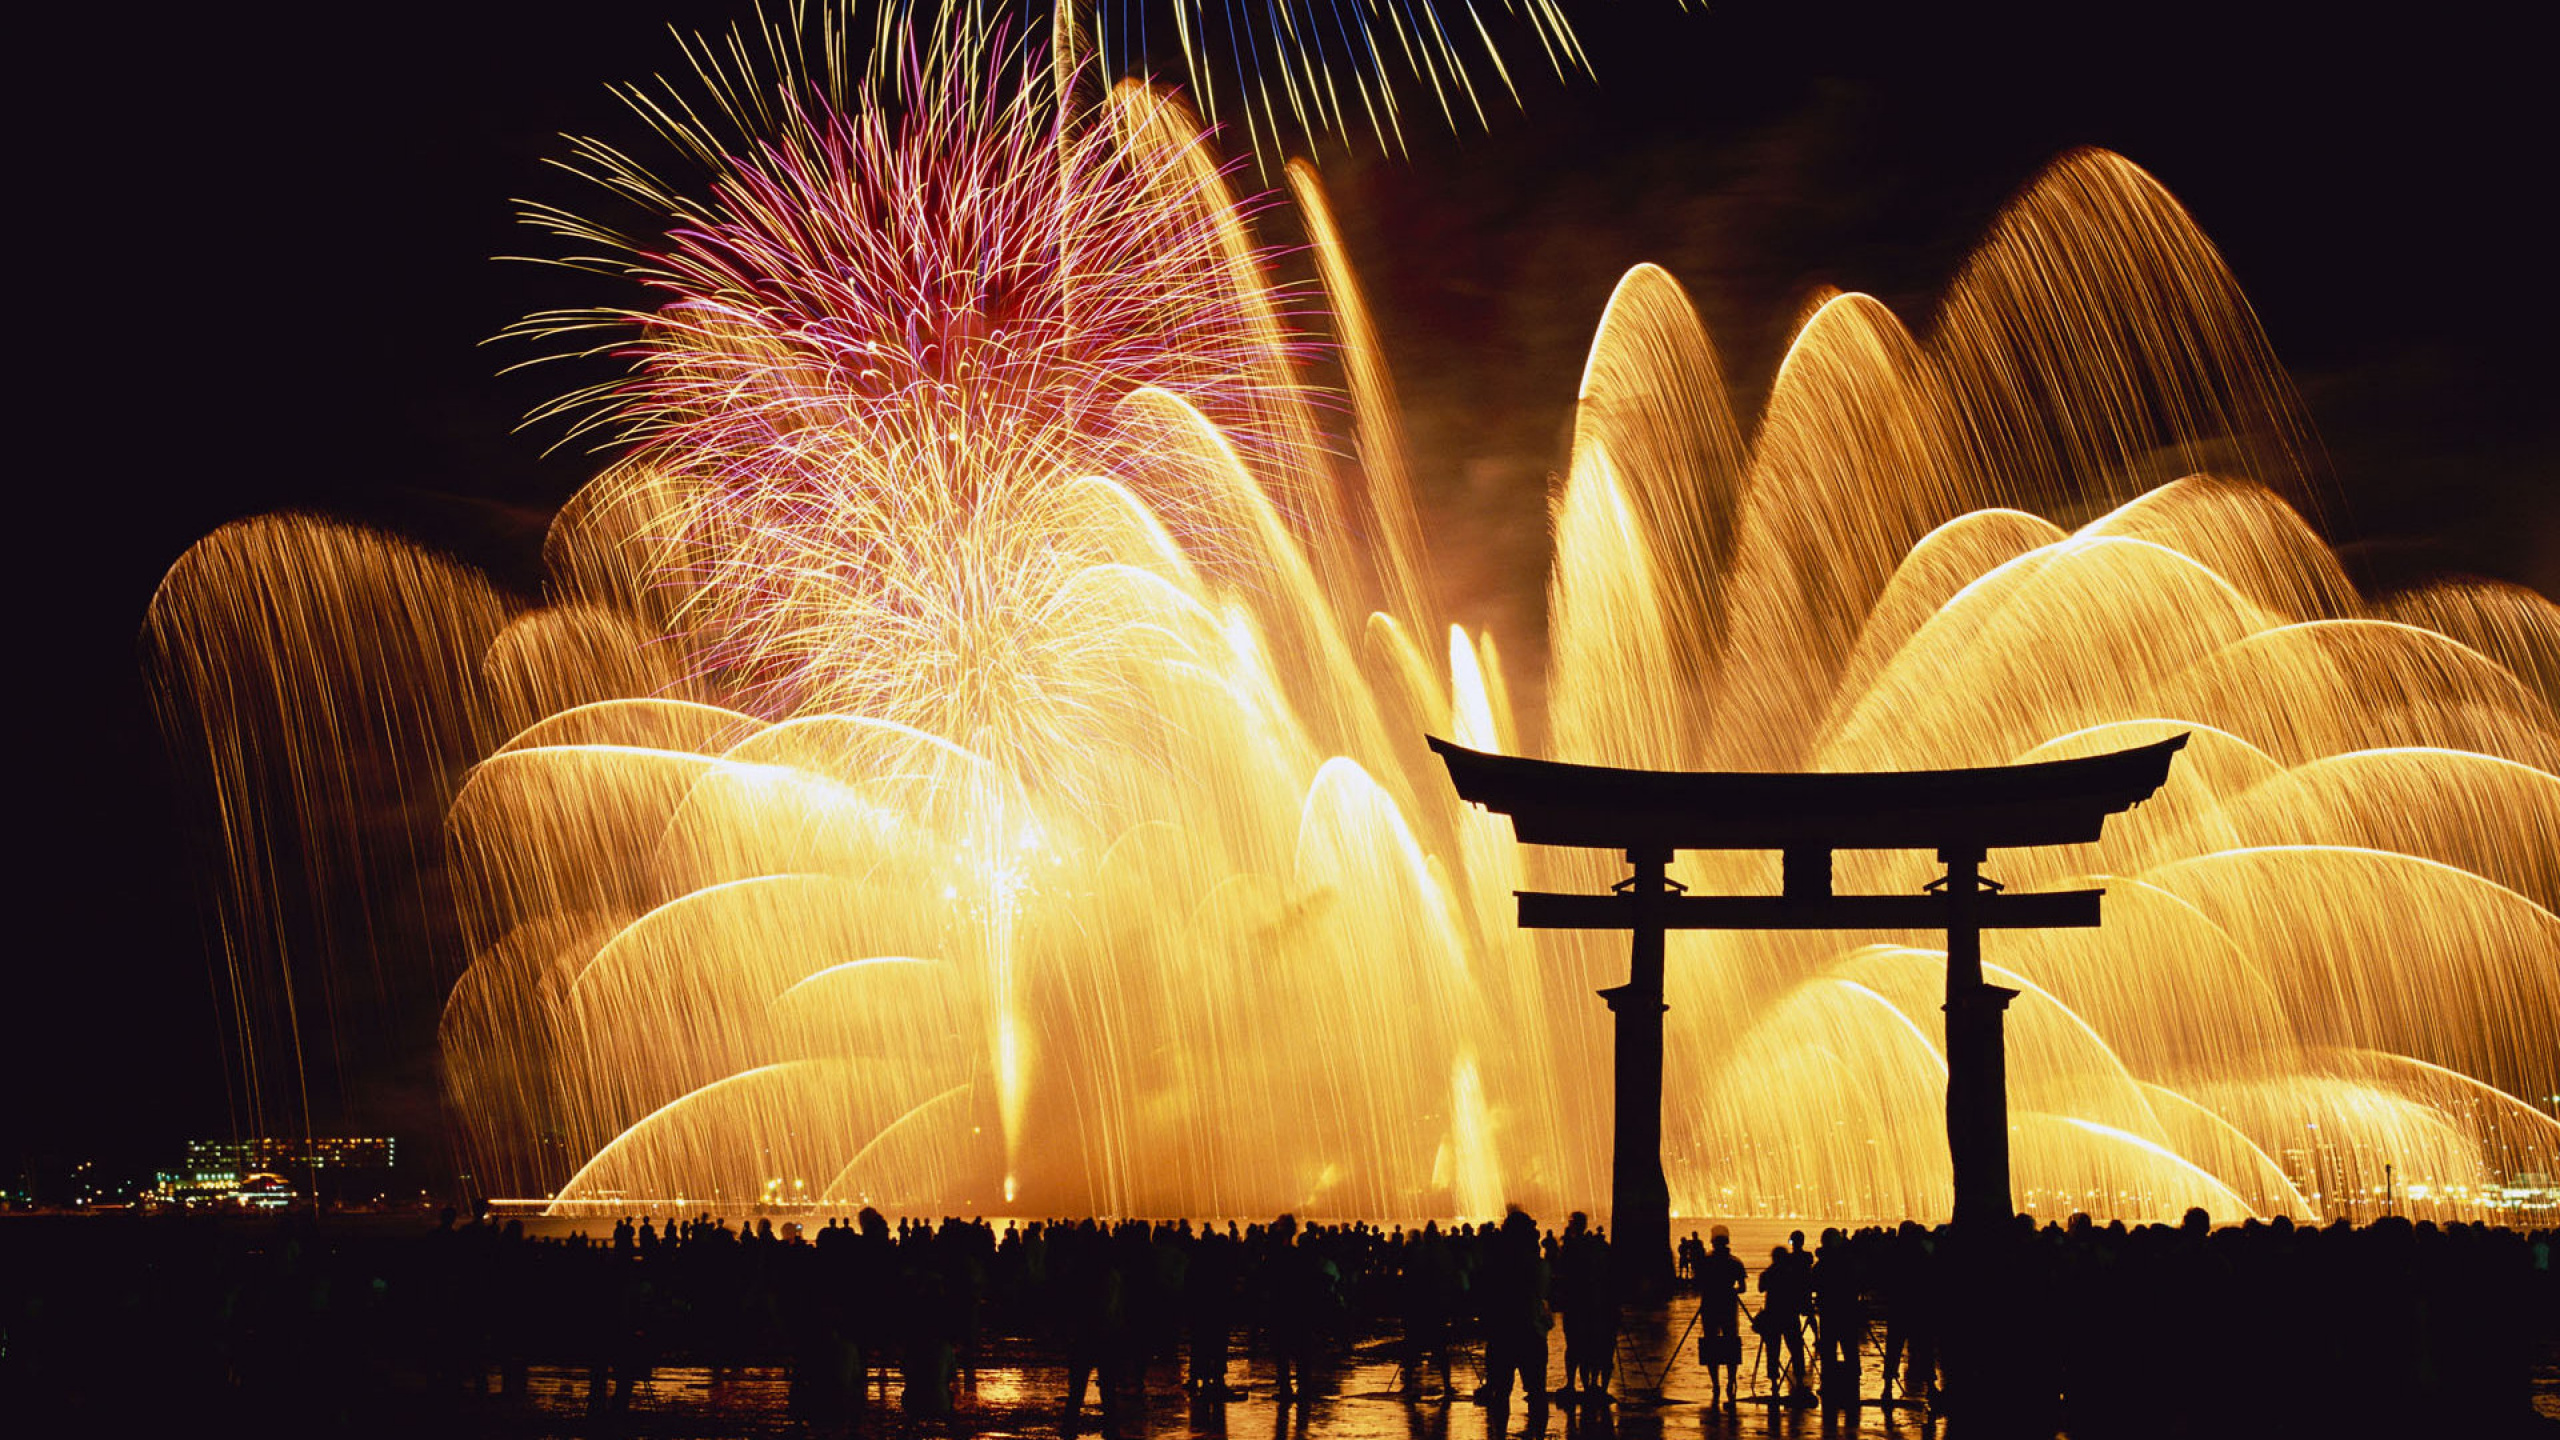 日本, 新年前夕, 新的一年, 烟花, 假日 壁纸 2560x1440 允许